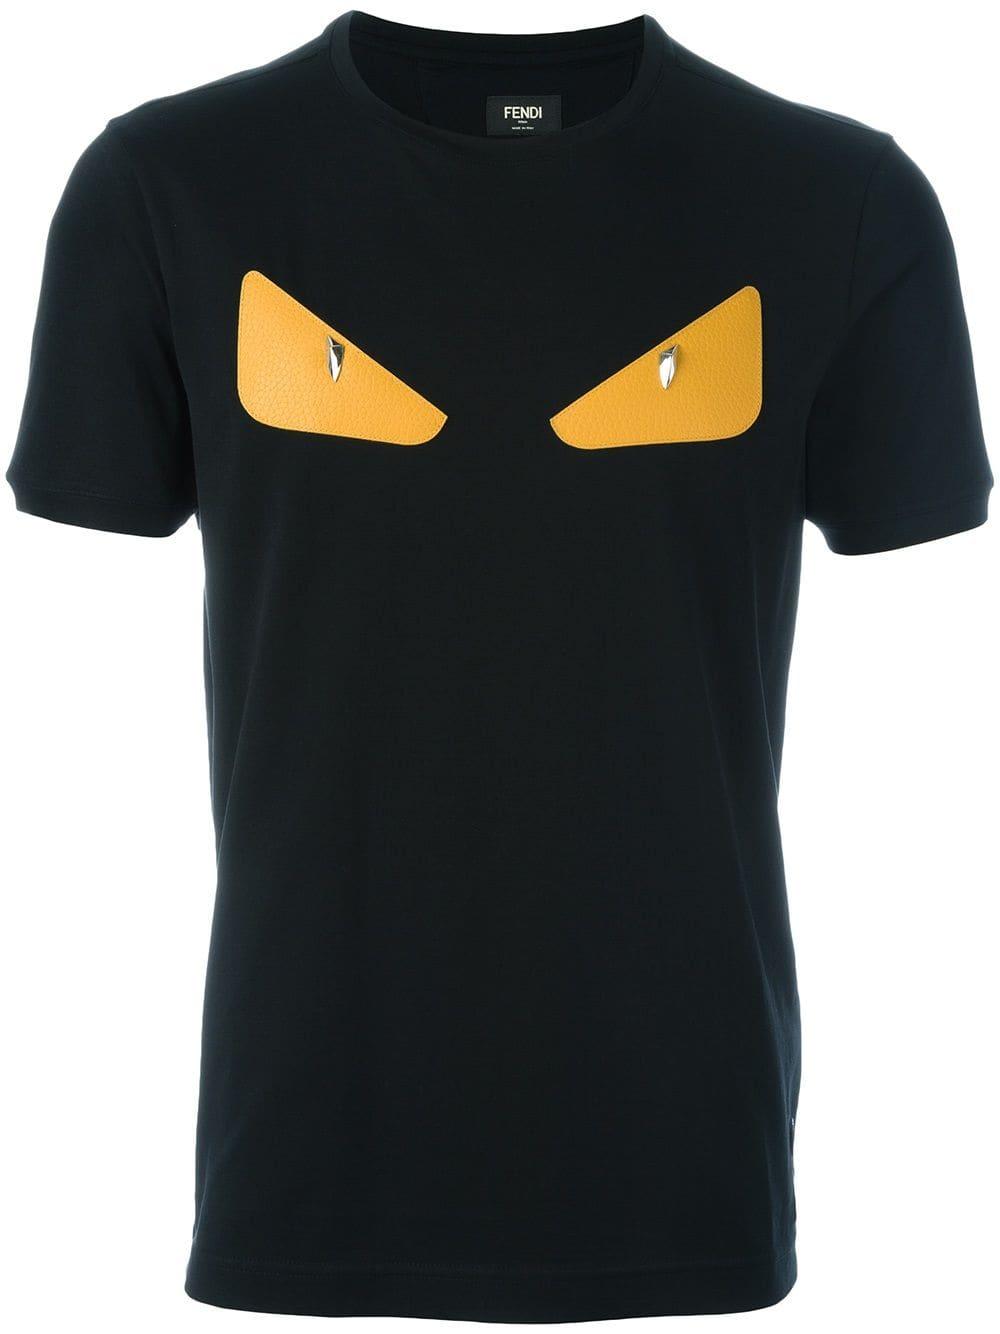 Fendi Cotton 'monster' T-shirt in Black for Men - Save 43% - Lyst